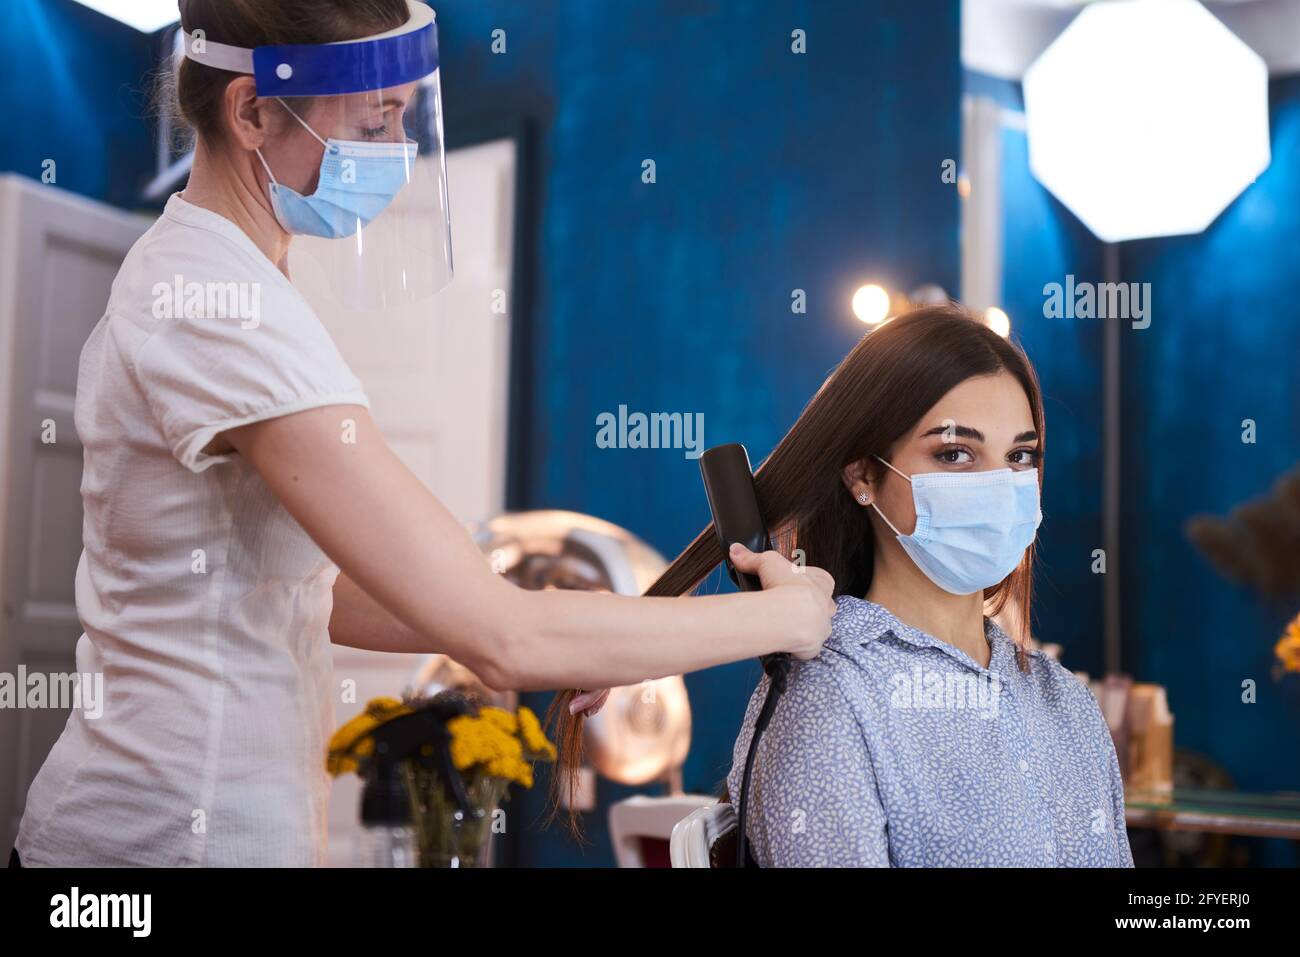 Presso il salone di bellezza durante la pandemia Foto Stock